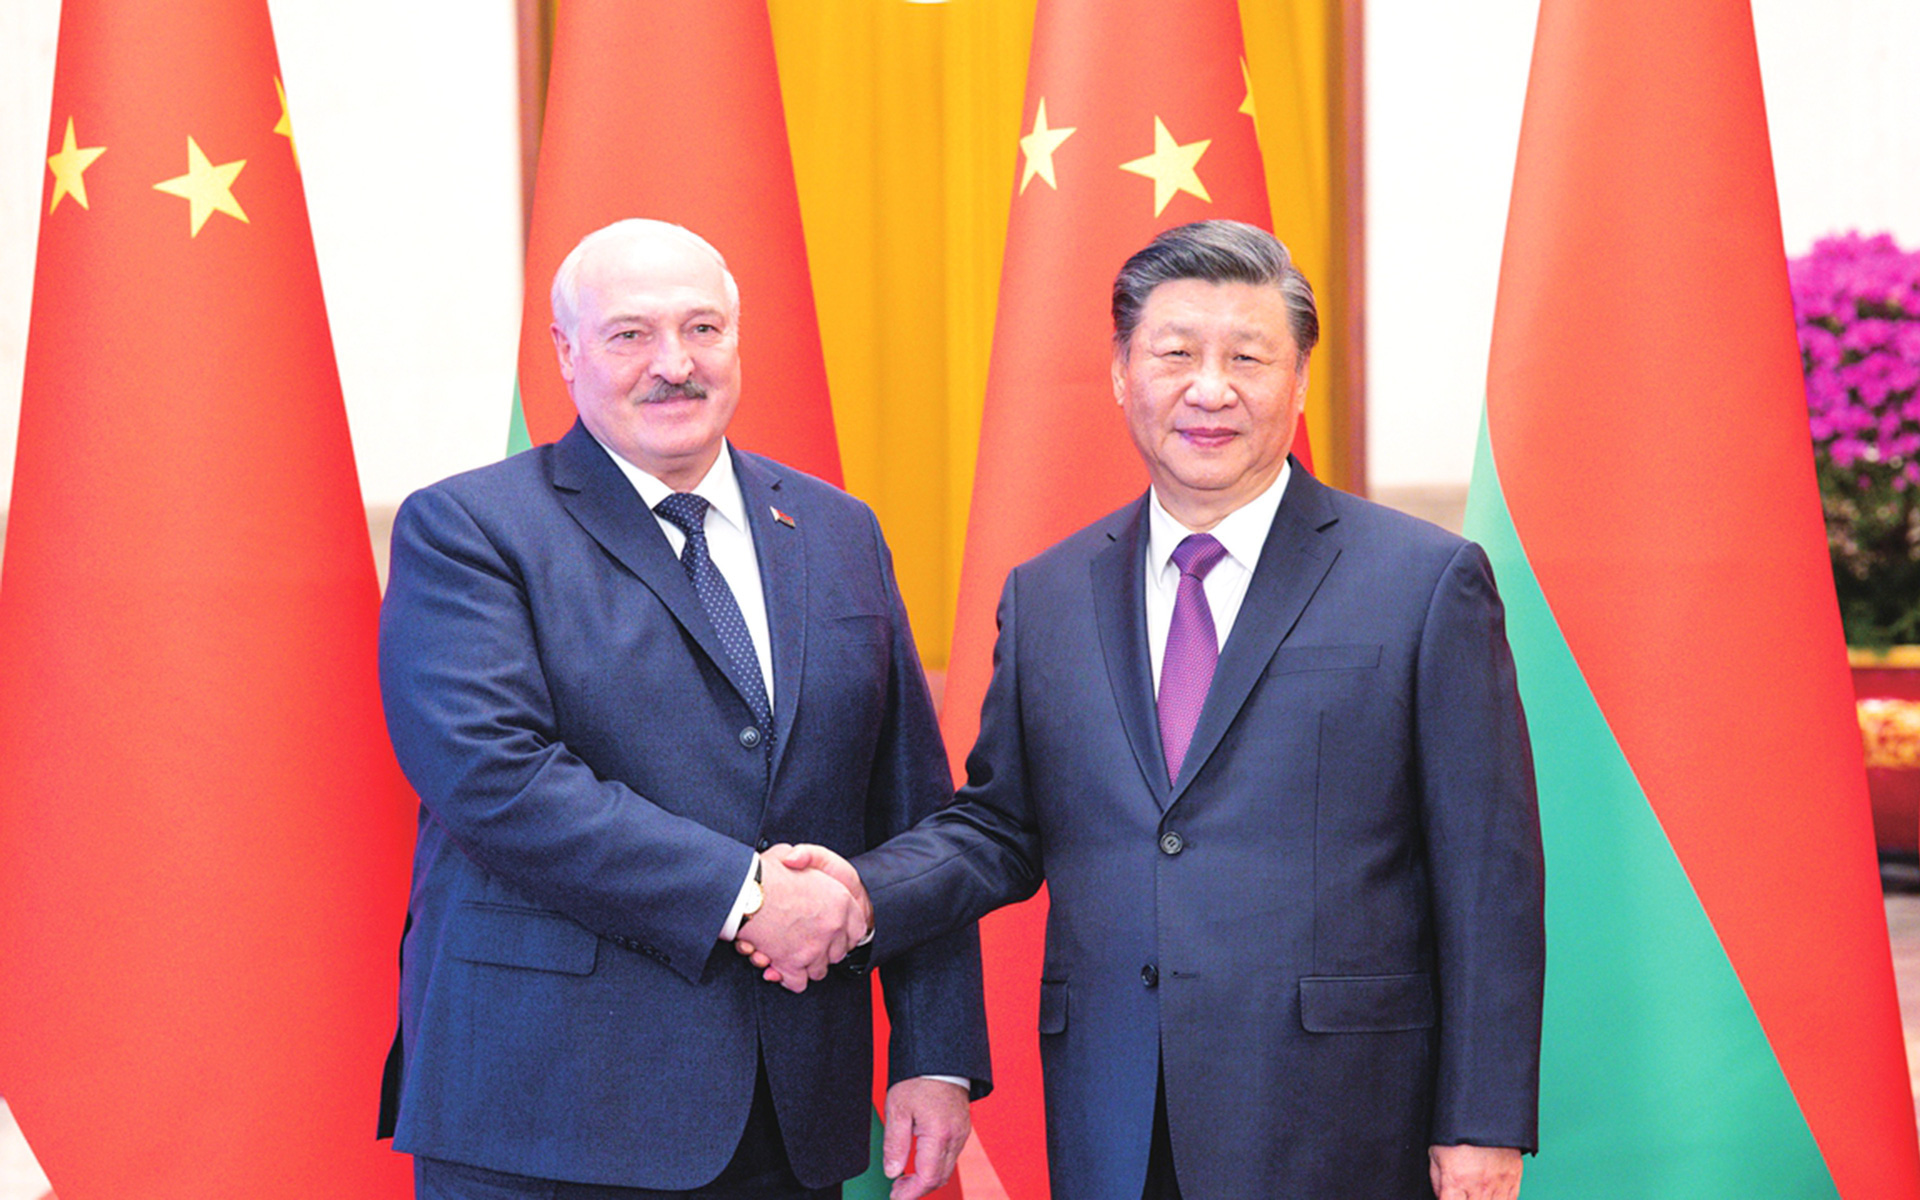 Tổng thống Belarus thăm Trung Quốc: Một chuyến đi, hai góc nhìn